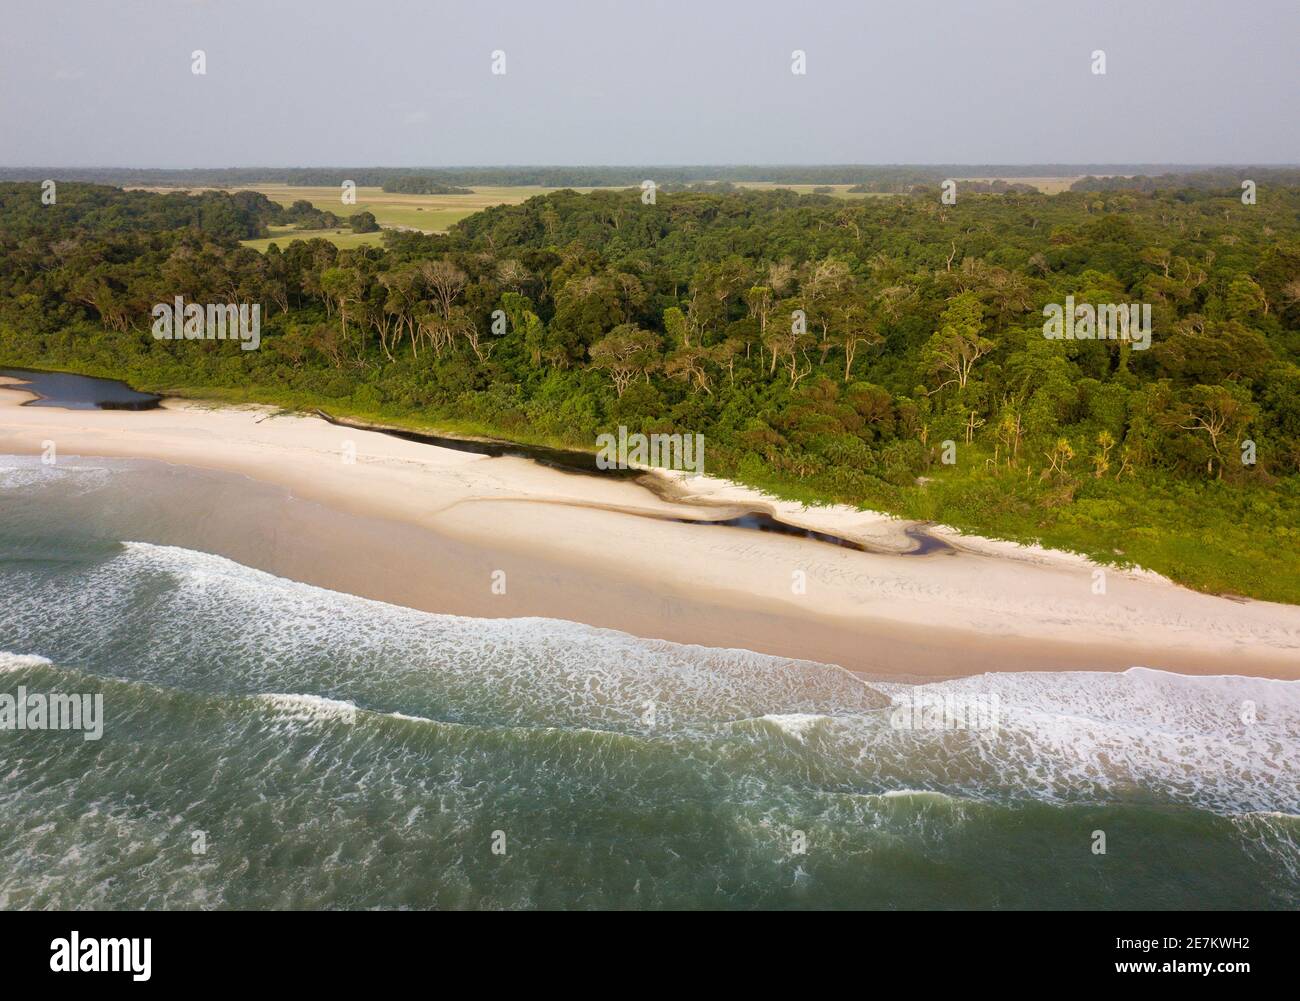 Plage et forêt tropicale, près d'Omboue, Gabon, Afrique centrale Banque D'Images